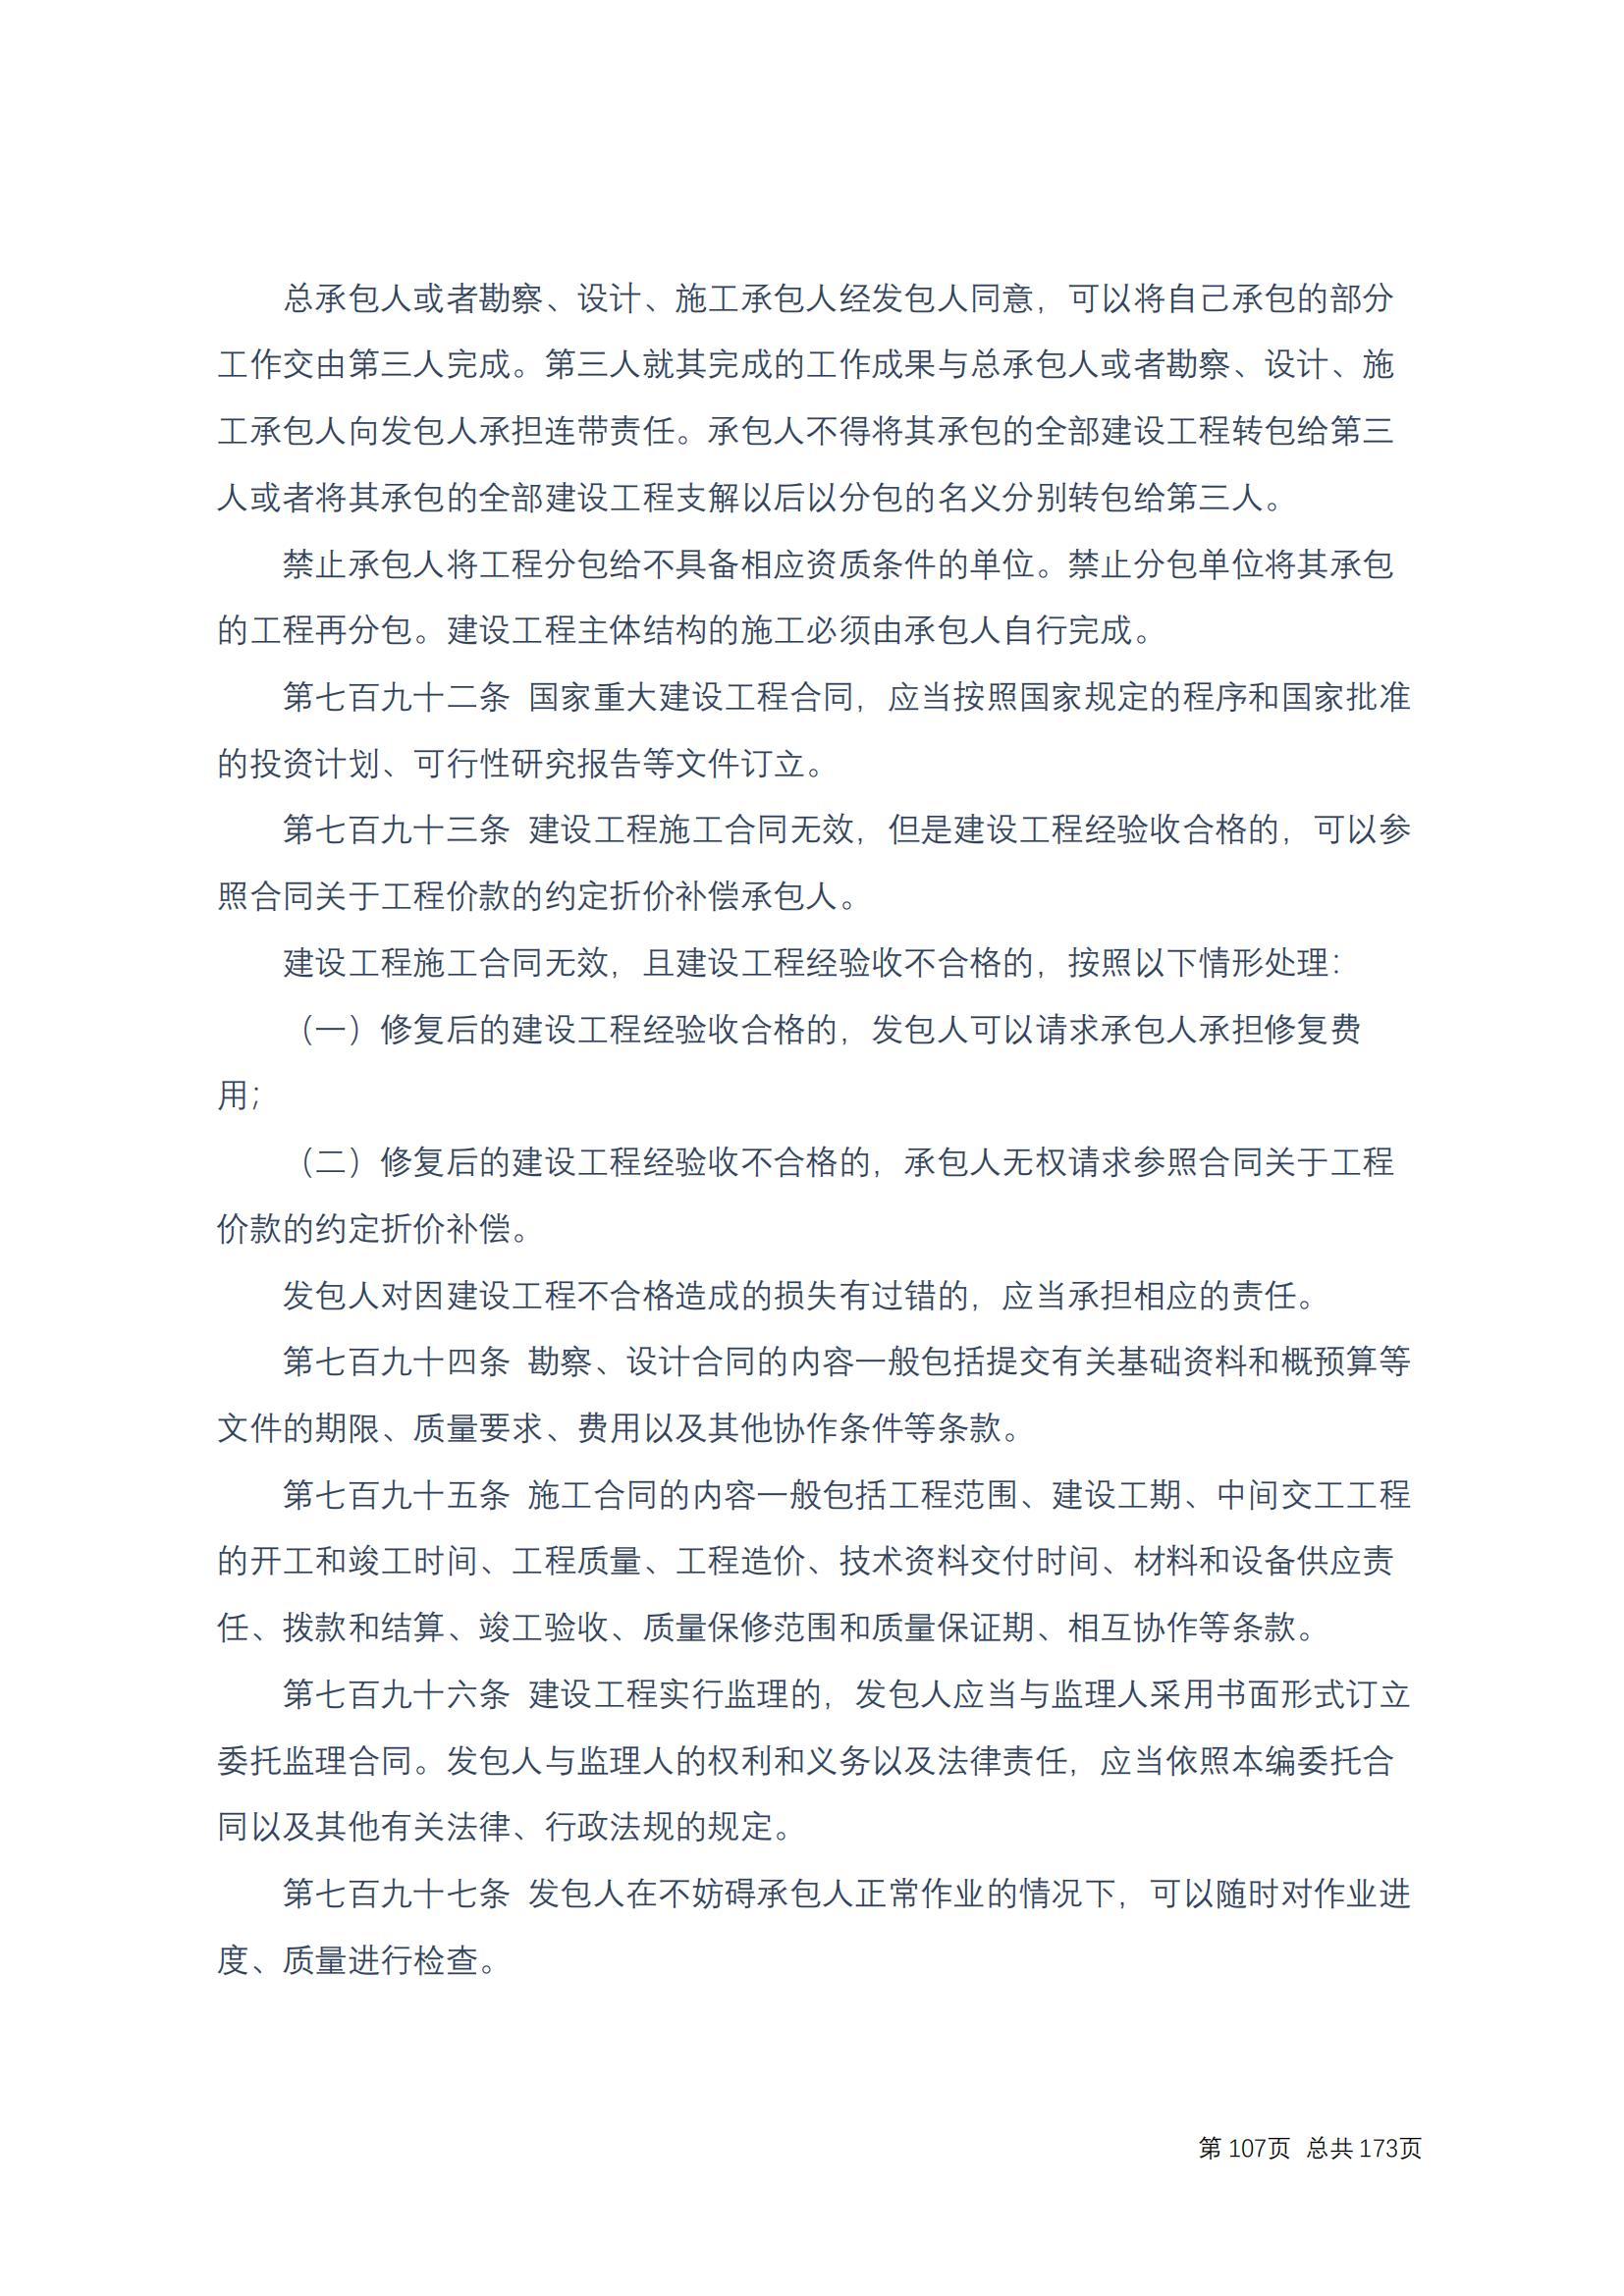 中华人民共和国民法典 修改过_106